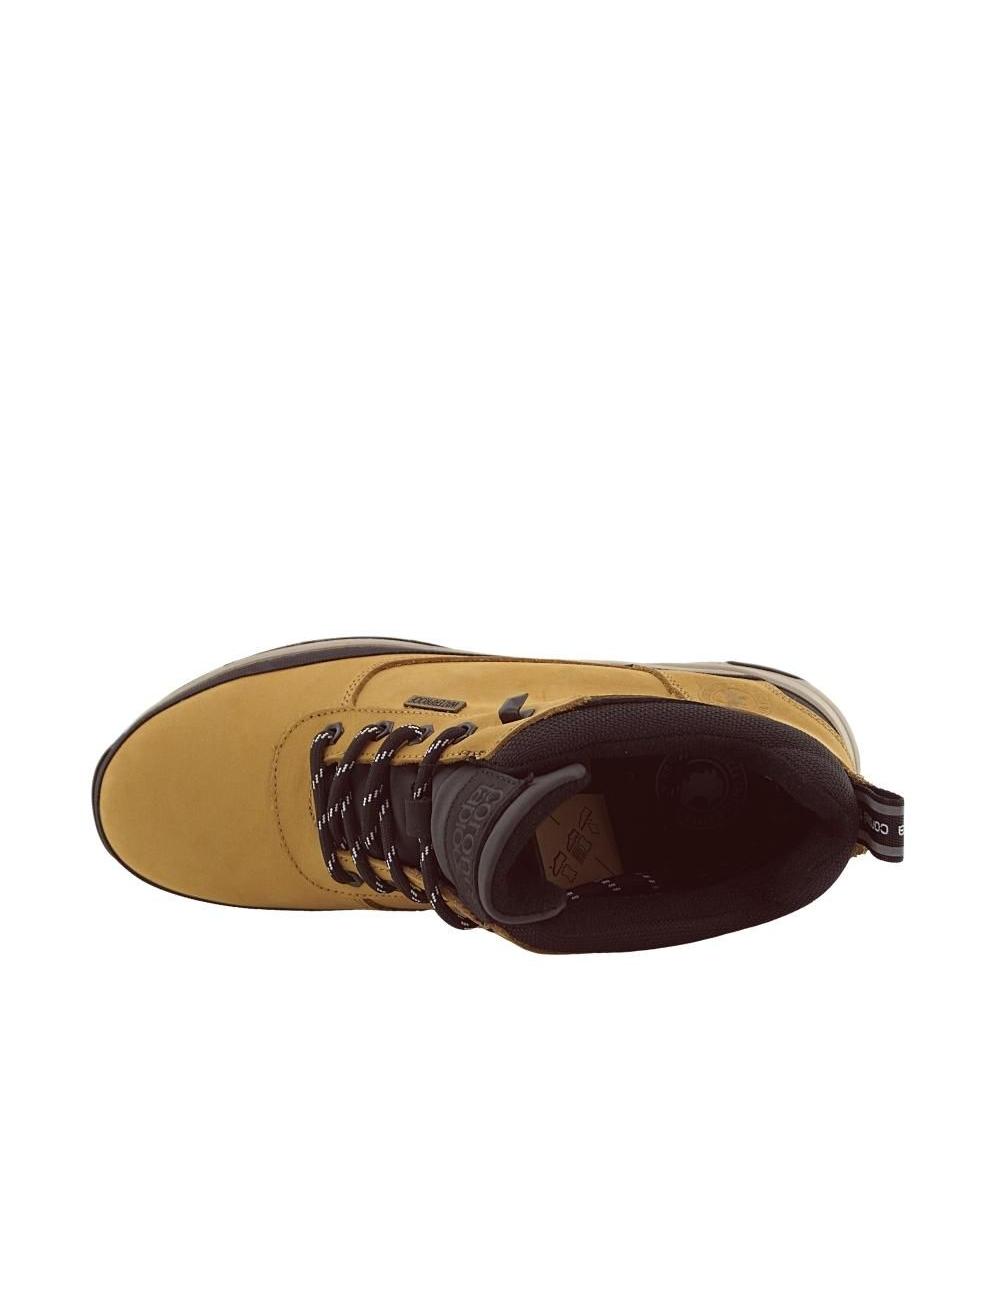 Zapatos de color mostaza para hombre Coronel Tapioca 519